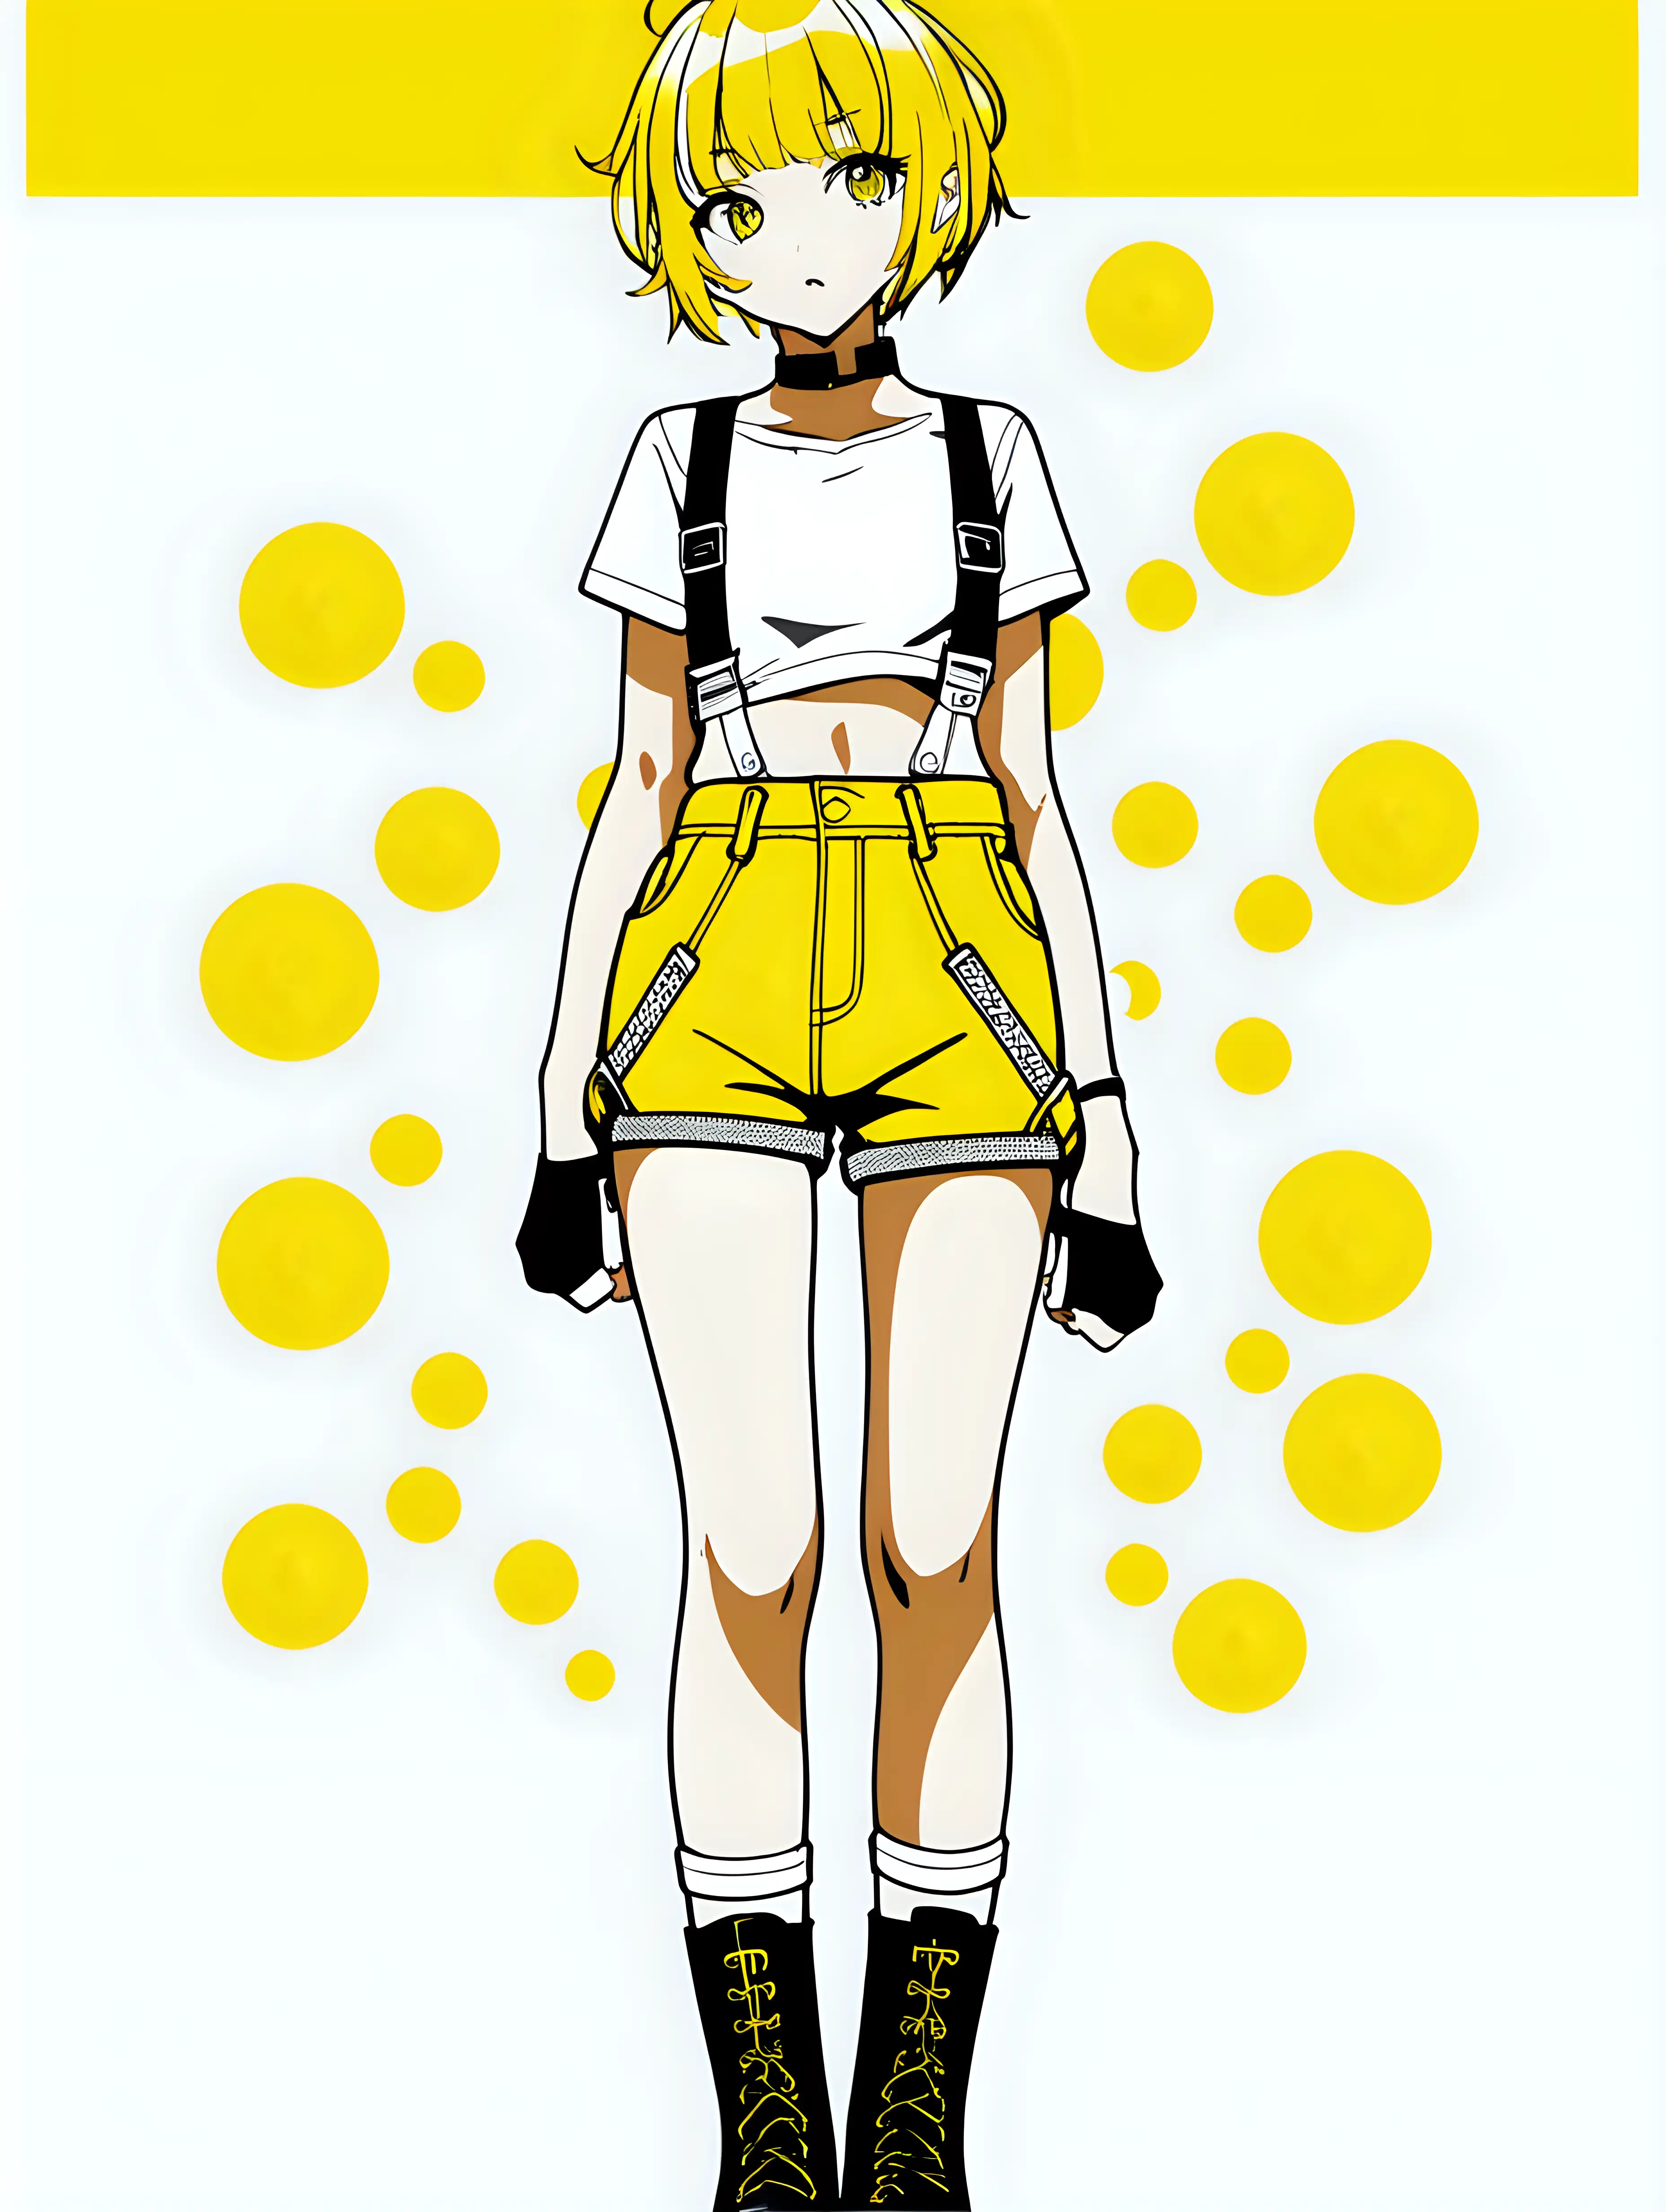 Anime Girl Wearing Suspenders Vaporwave Goggles Stock Illustration  2202712893 | Shutterstock